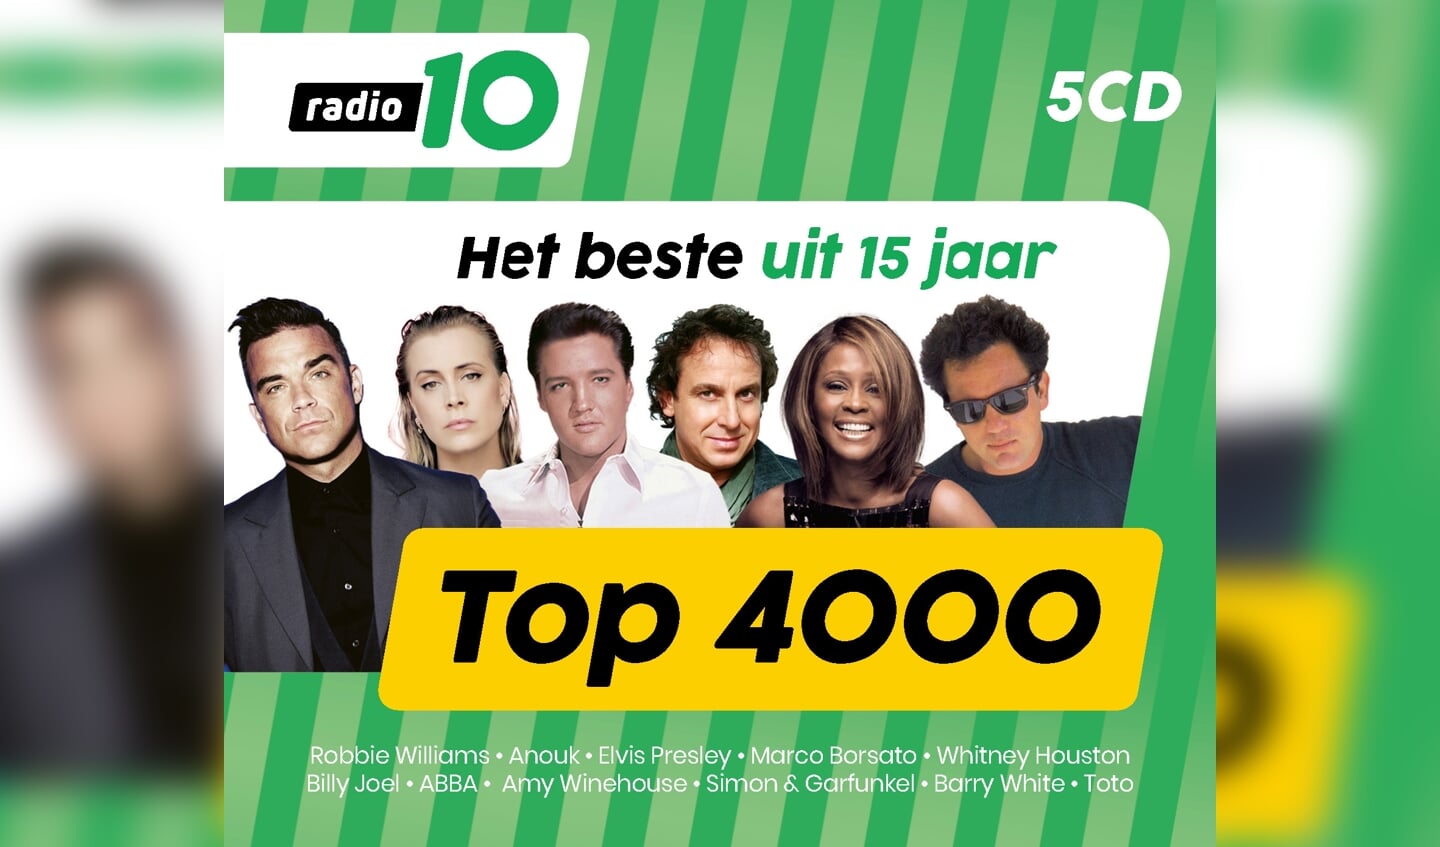 De Top 4000 van Radio 10. 